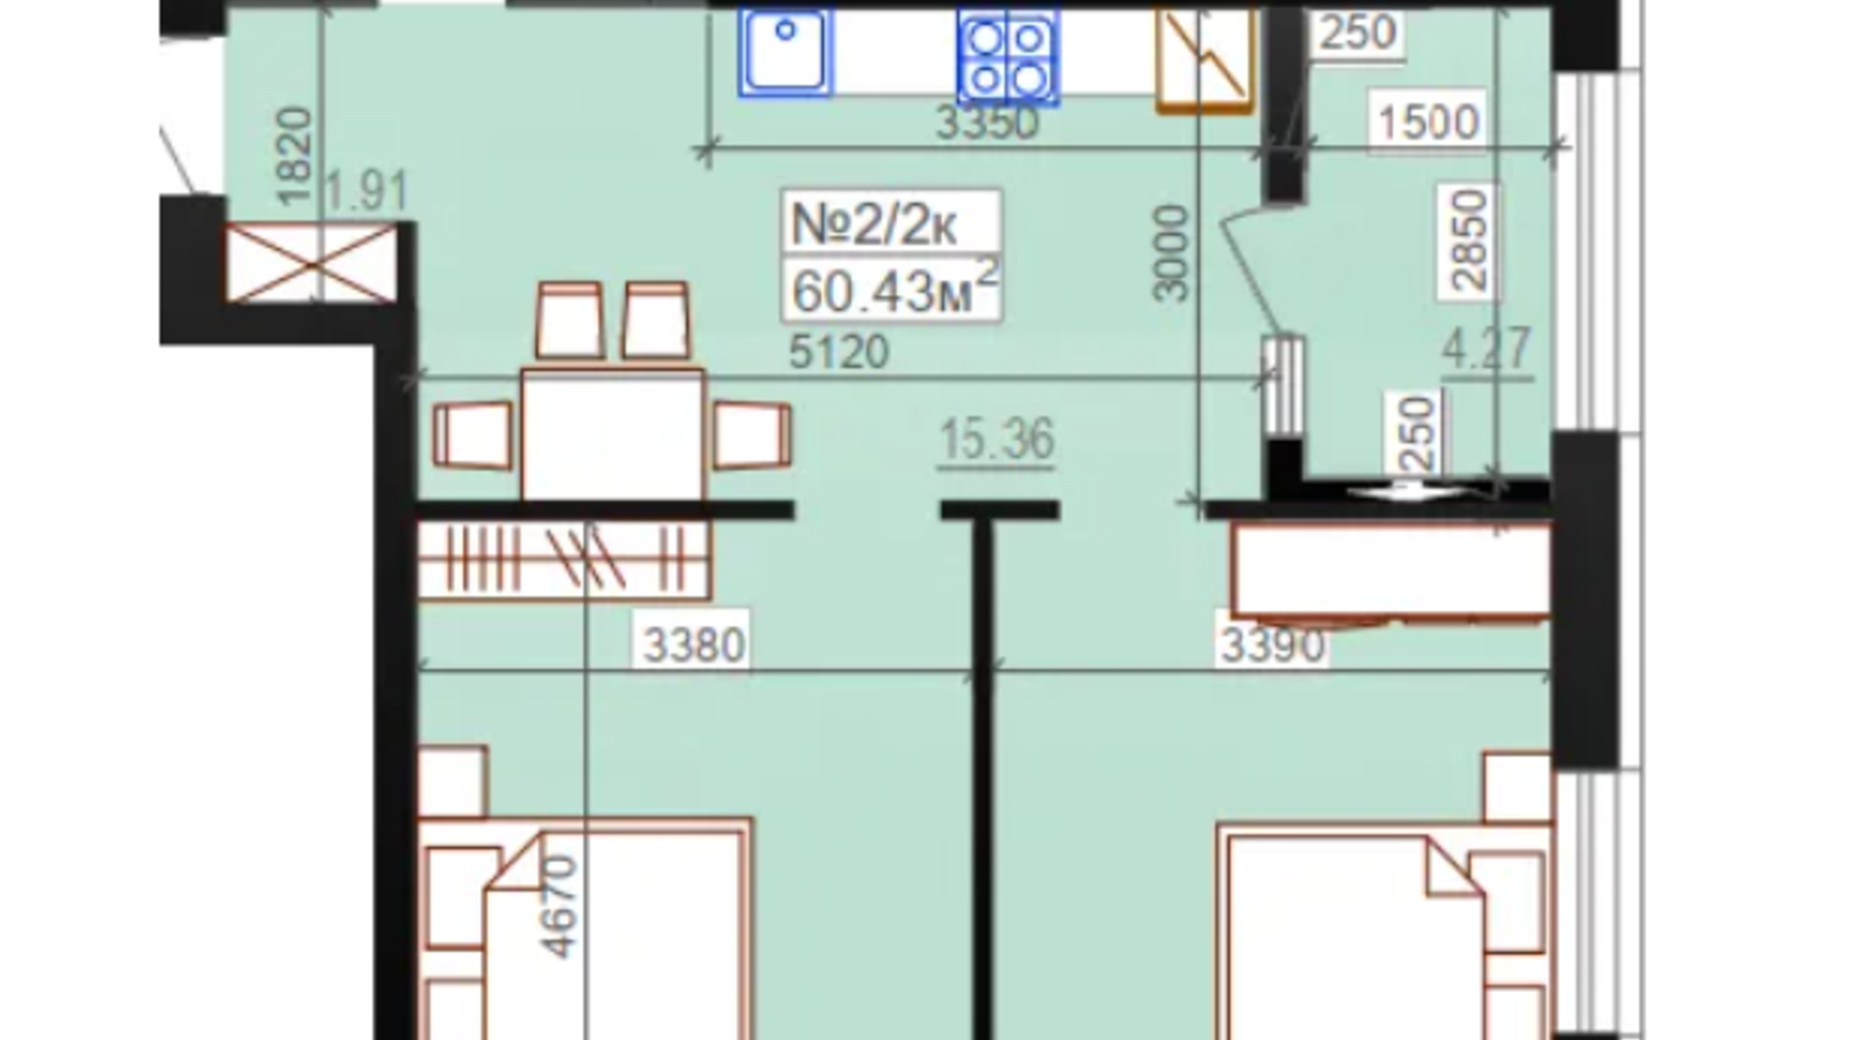 Планировка 2-комнатной квартиры в ЖК Миланж 60.43 м², фото 548254